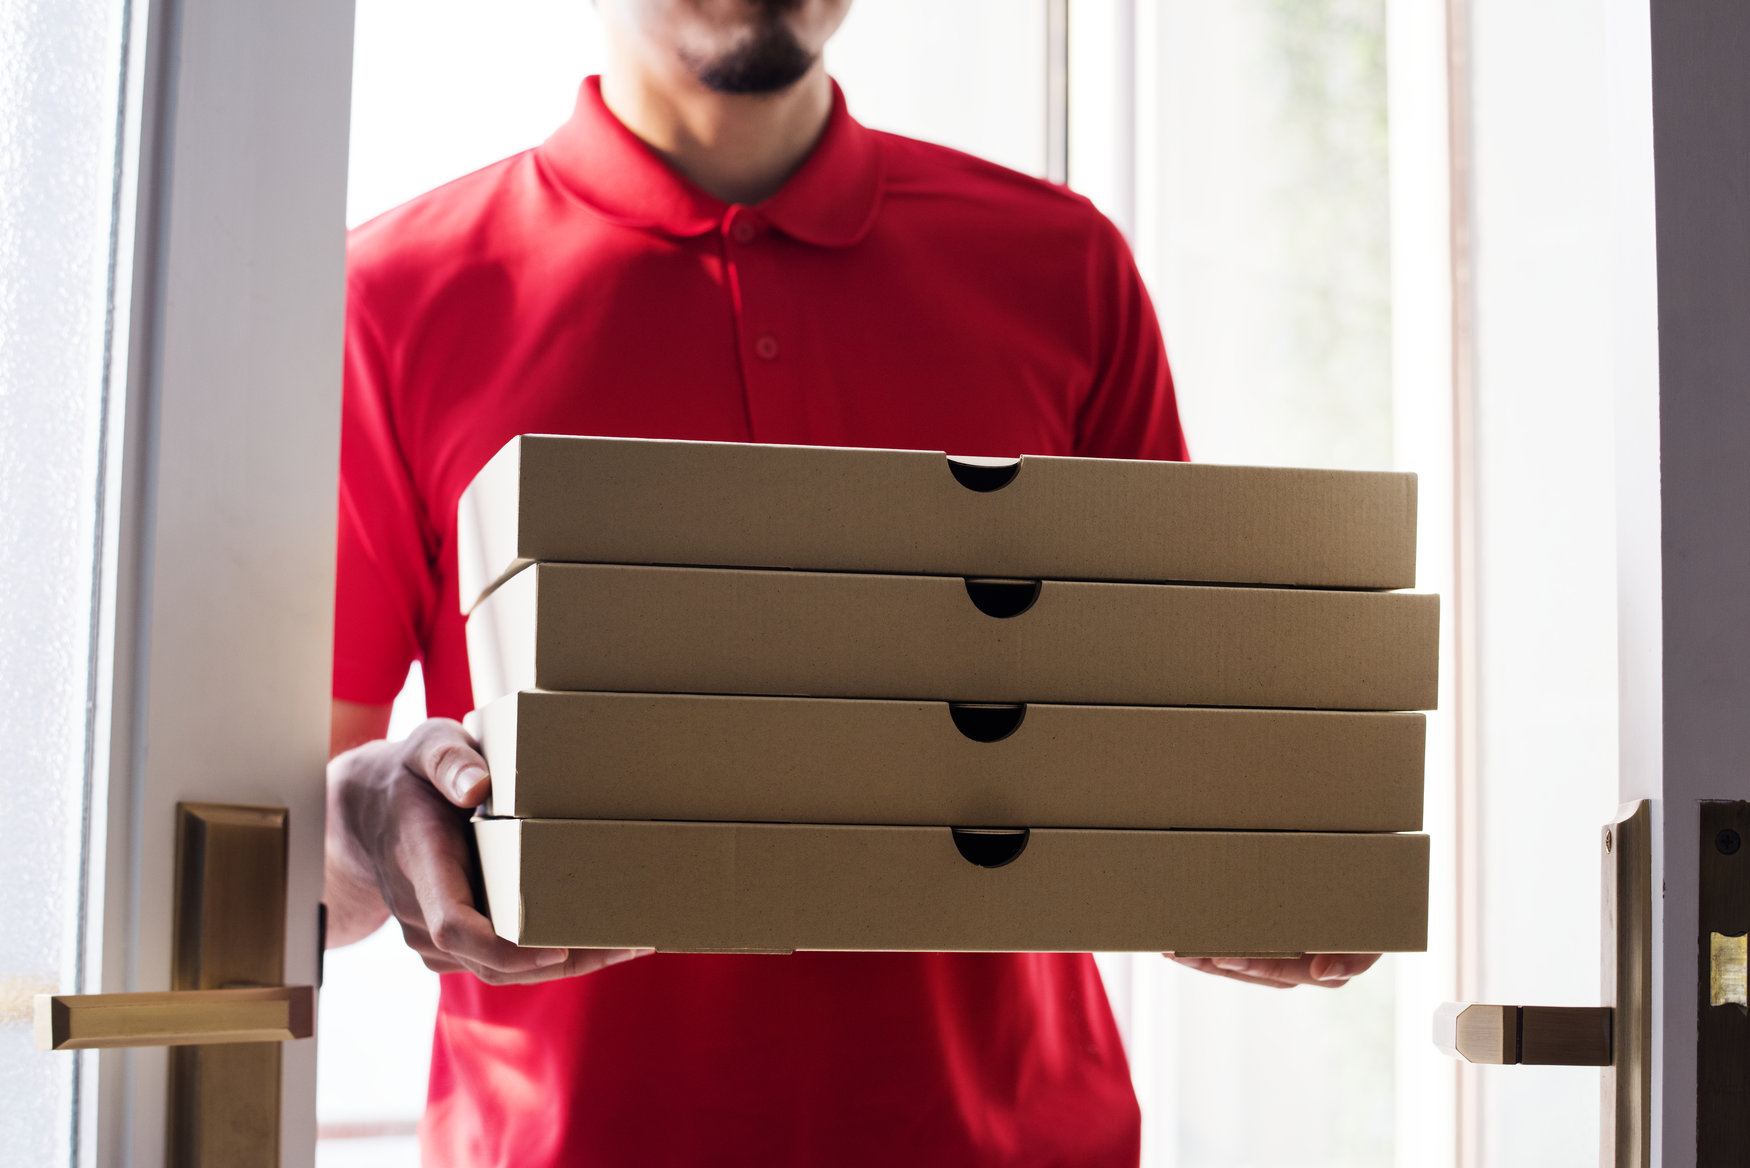 Un belgian primește de 10 ani livrări de pizza, fără să fi comandat vreodată